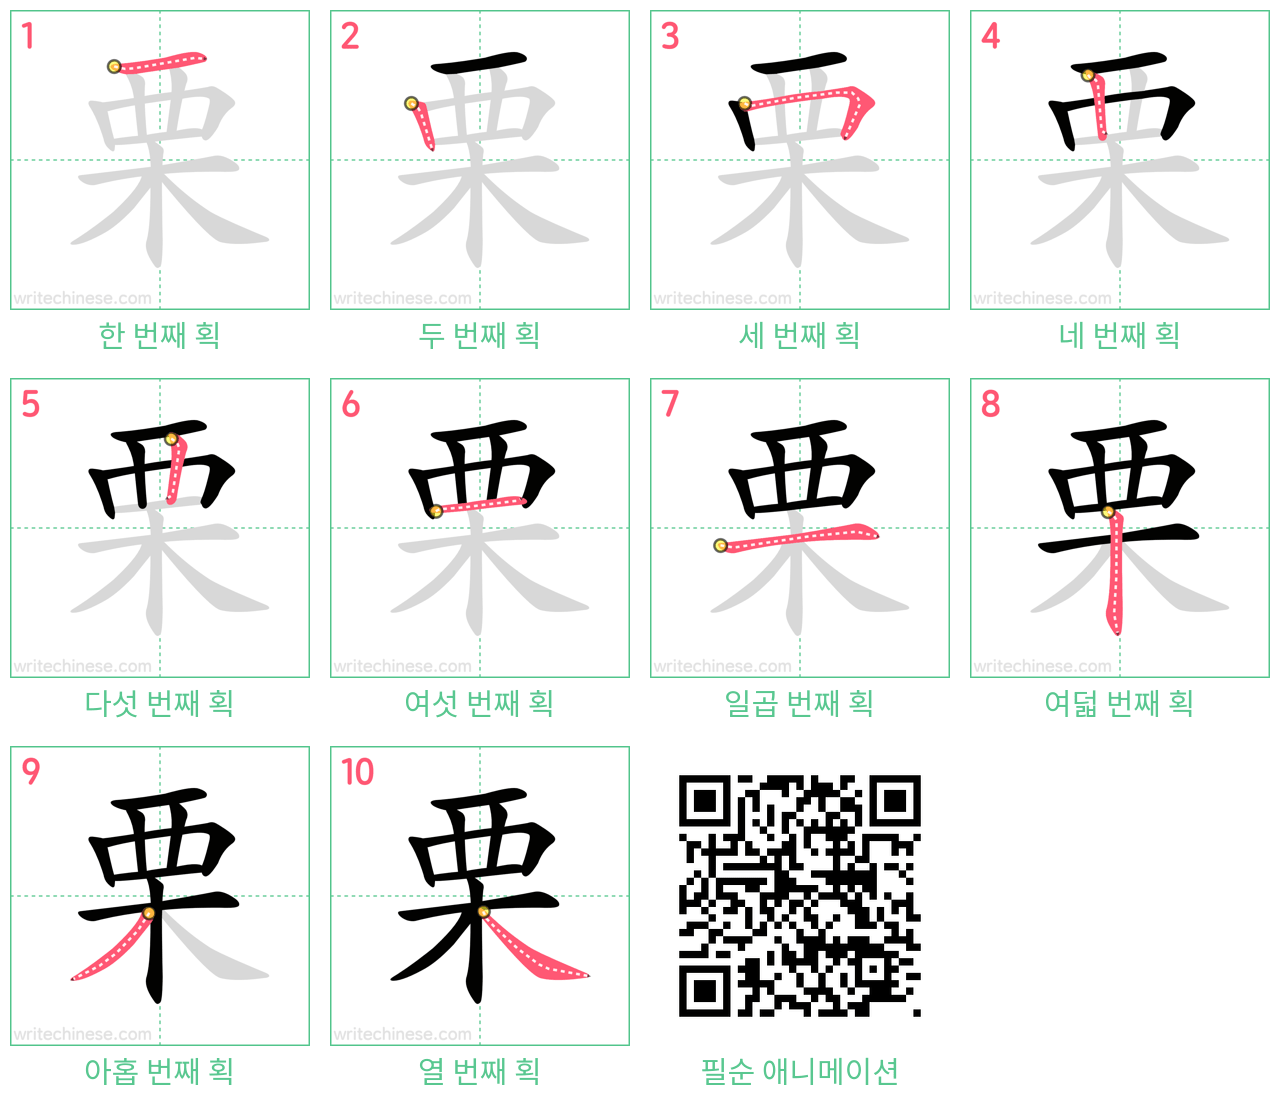 栗 step-by-step stroke order diagrams